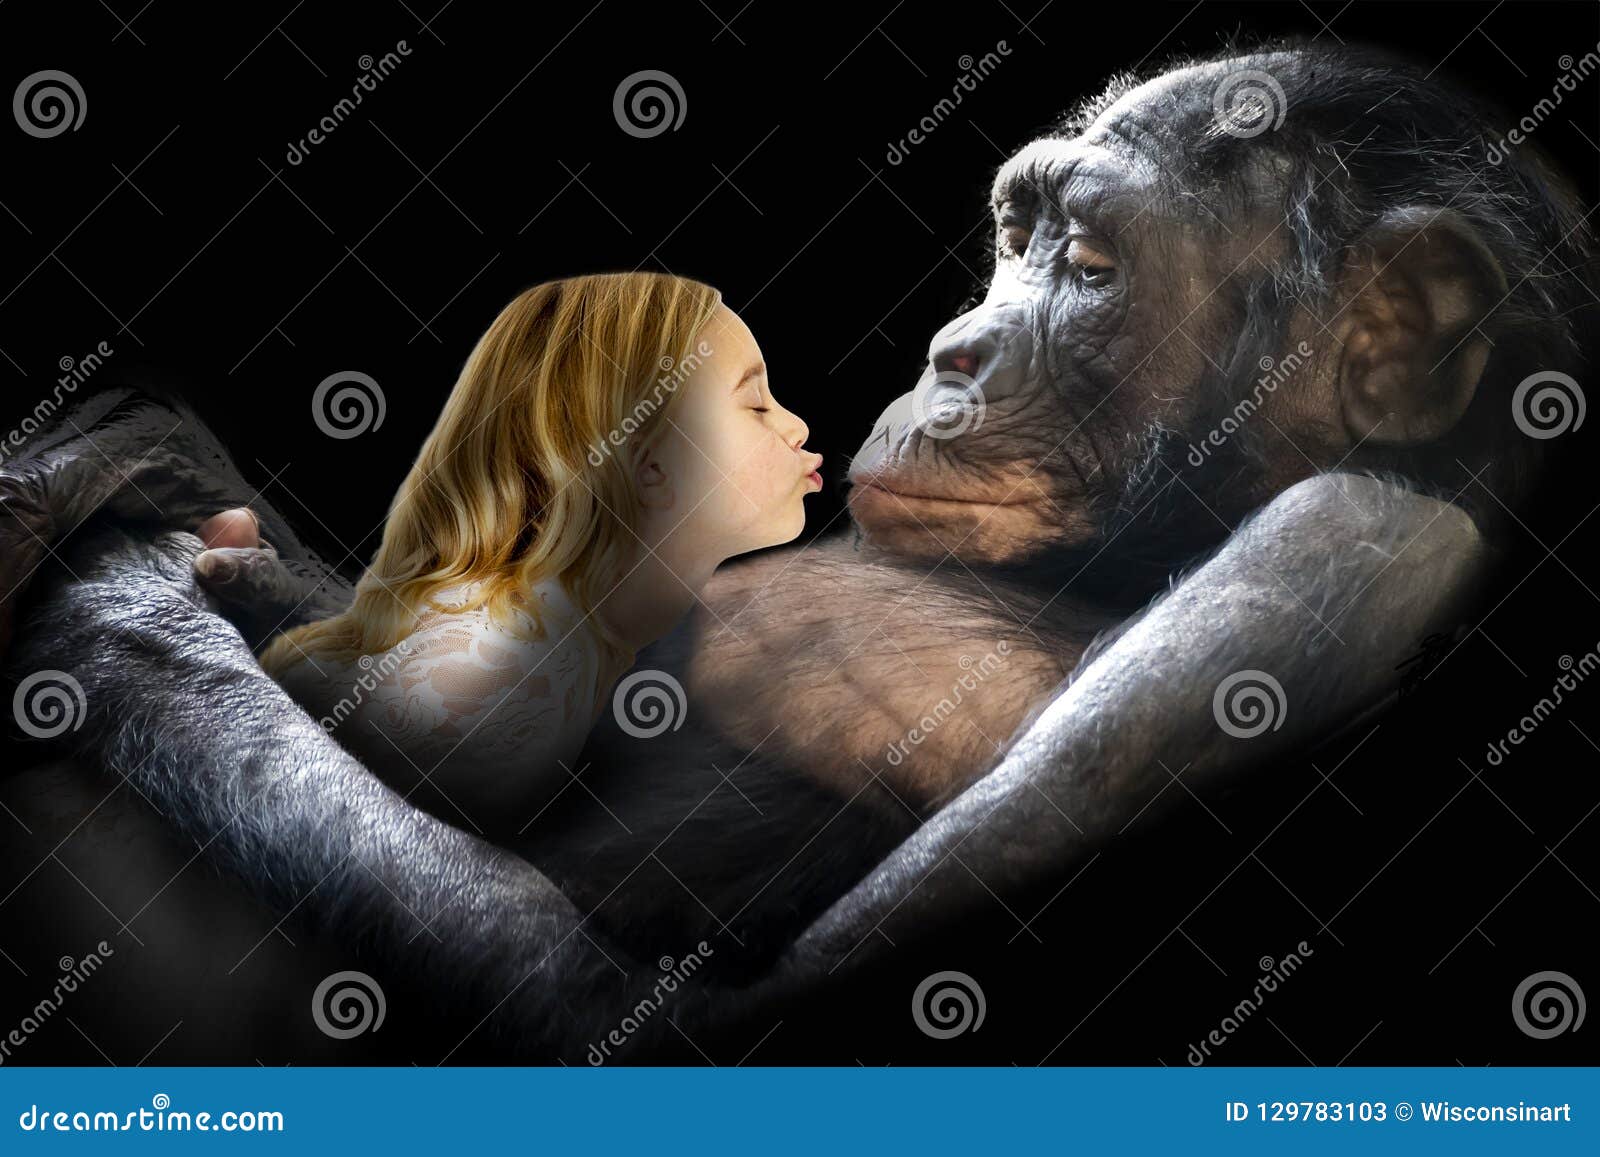 обезьяна трахает девку i фото 108